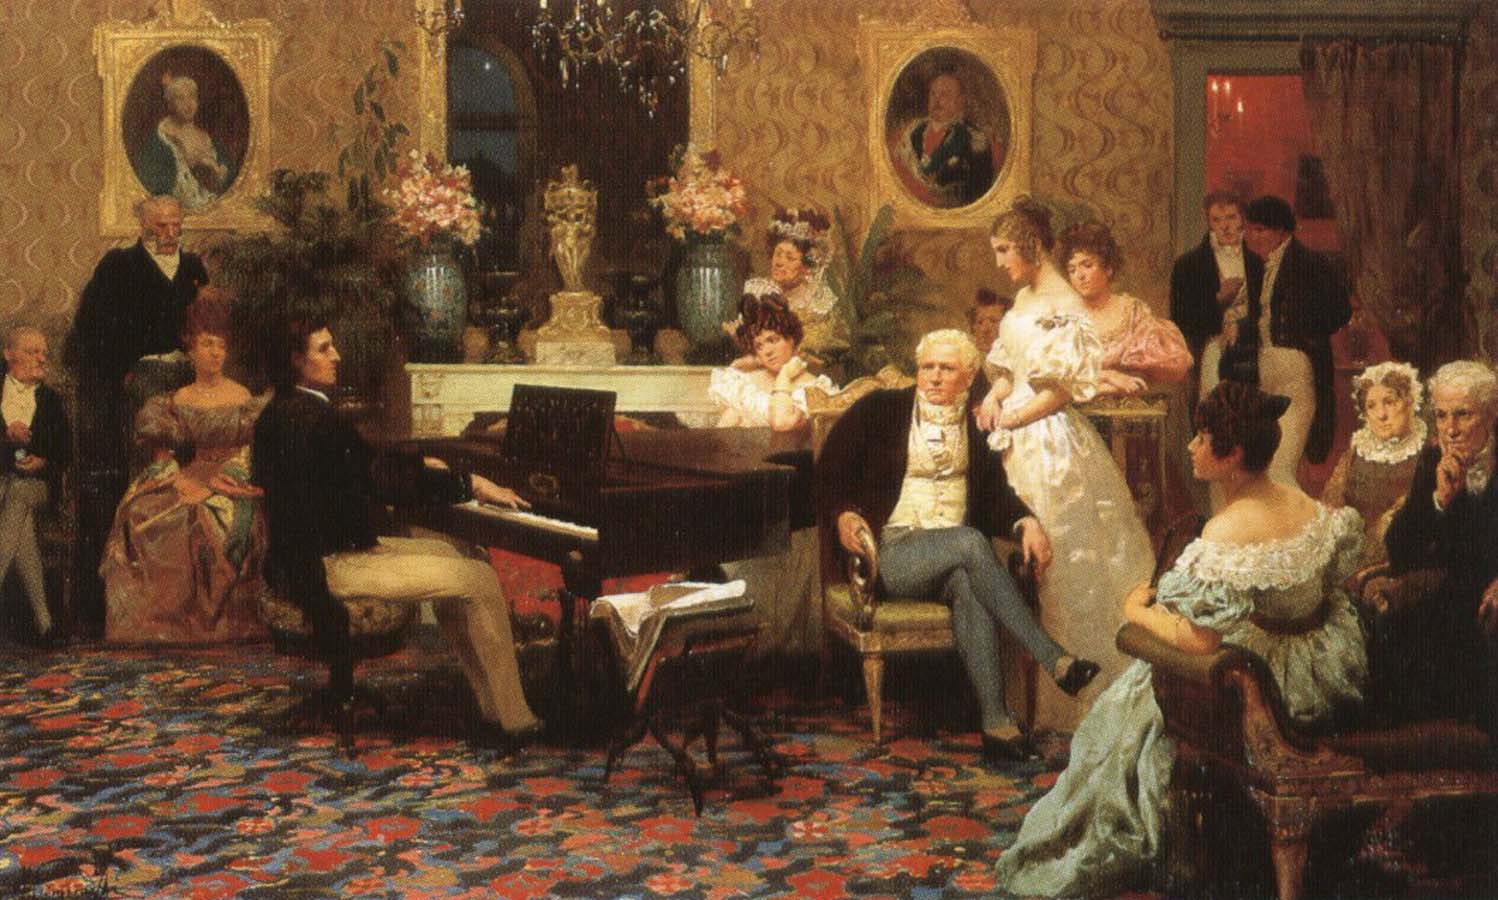 相比起在偌大的劇院面對全都不認識的觀眾，蕭邦比較喜歡較親密的演奏空間，所以他常在沙龍 (salon) 中演出。